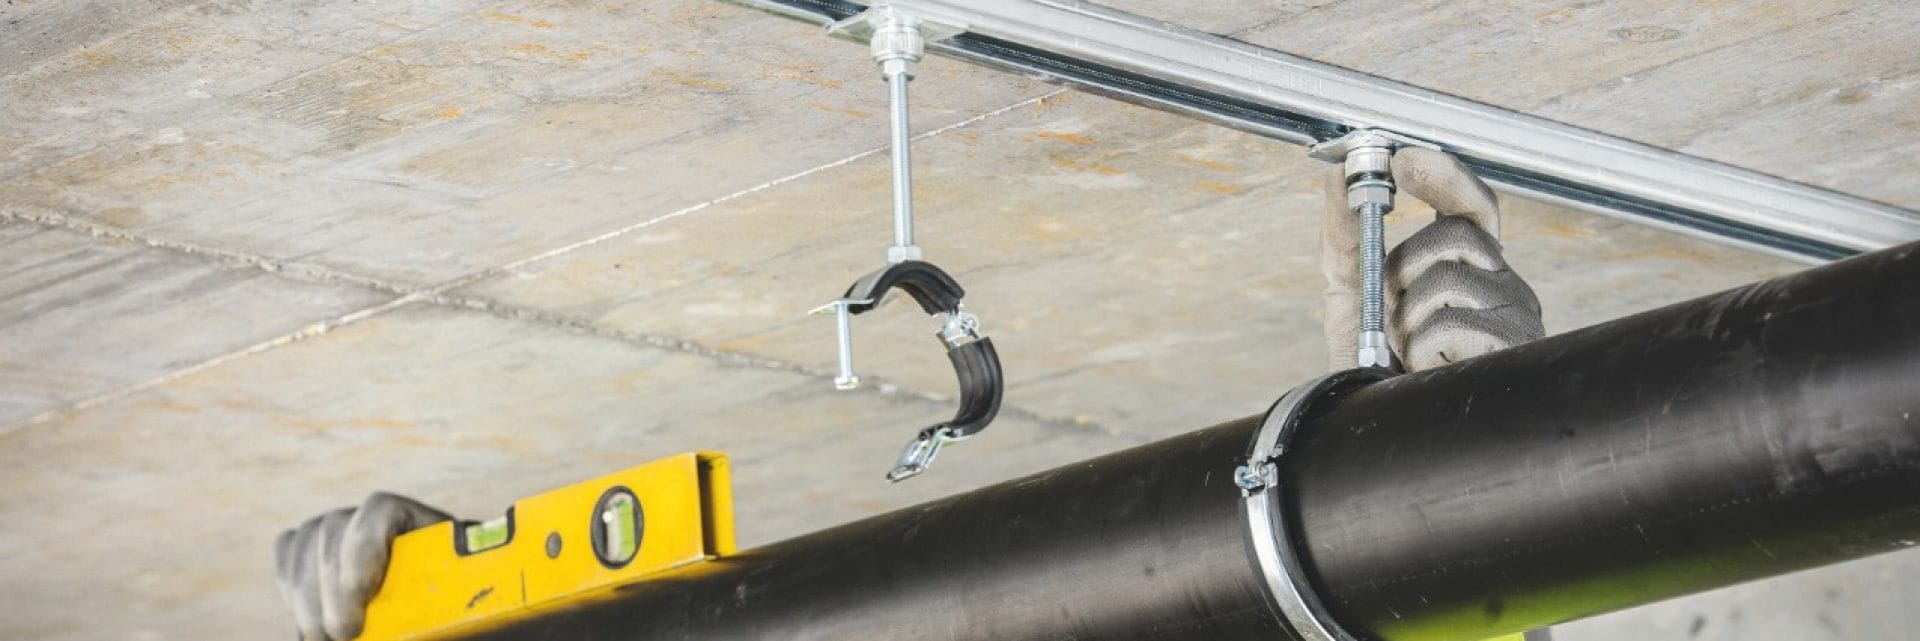 Con la piastra per collare Hilti regolabile in altezza, l'allineamento dei tubi inclinati sospesi è rapido e semplice